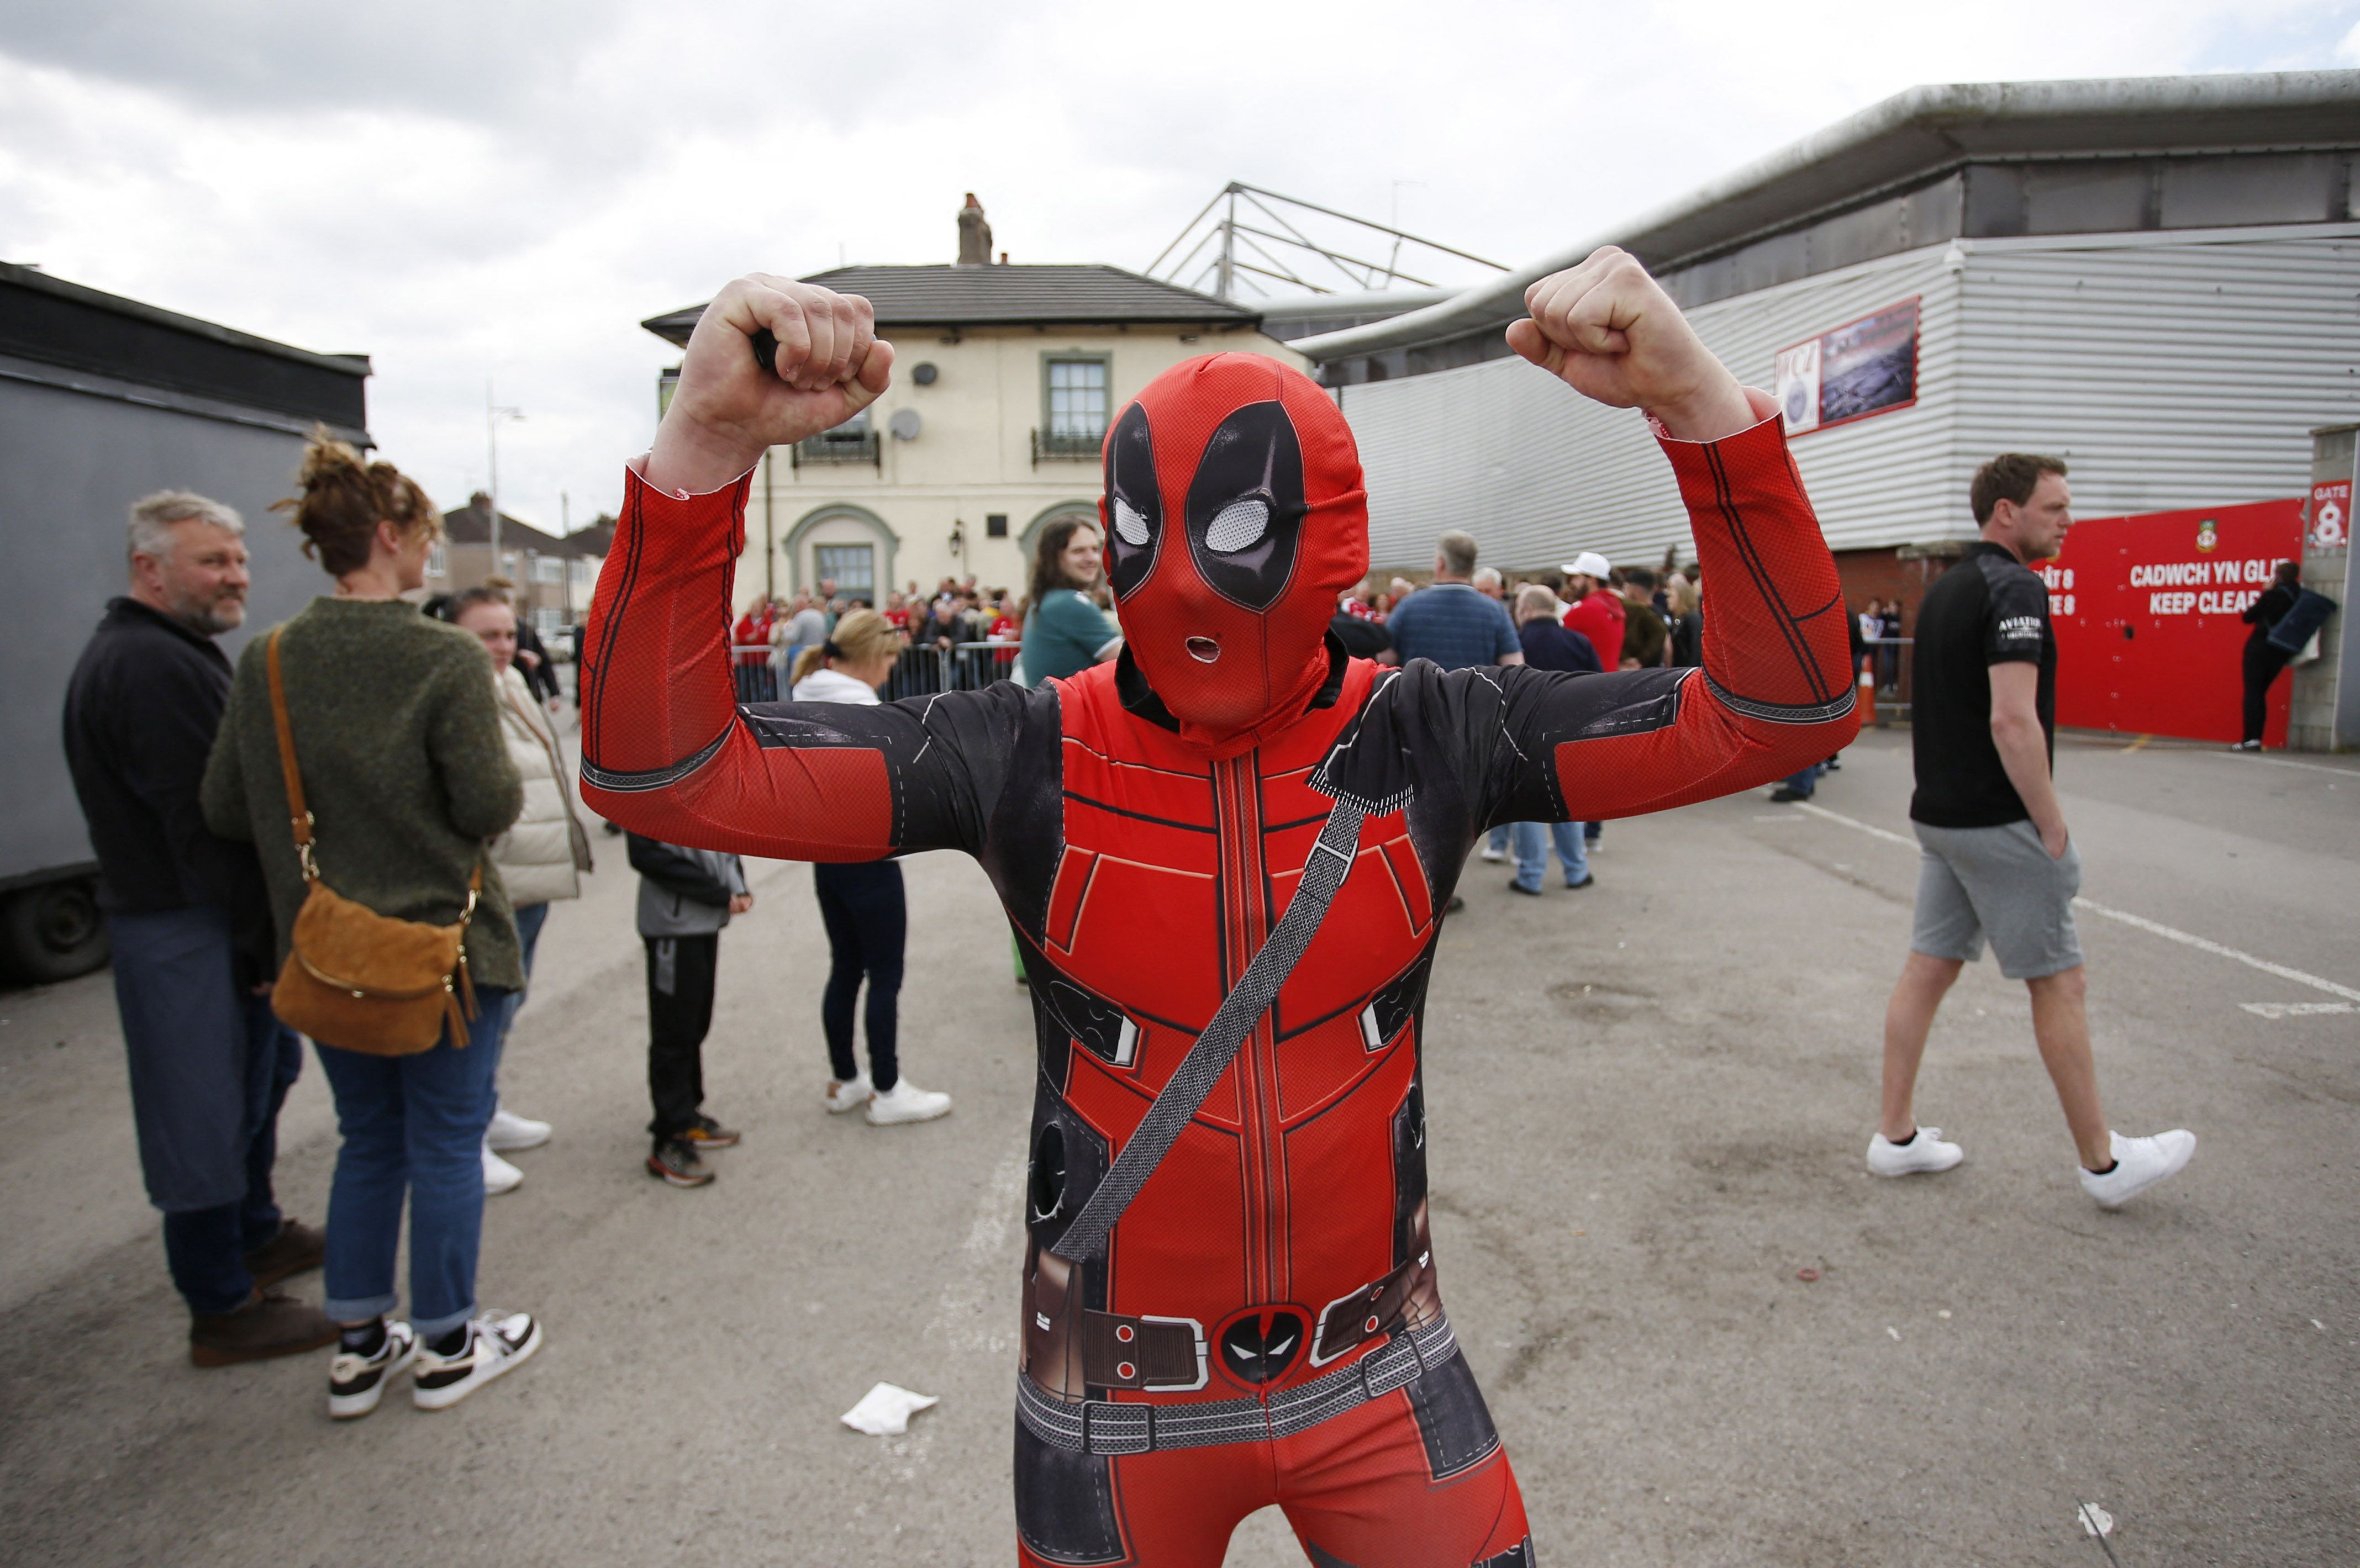 Un hincha del Wrexham disfrazado como Deadpool para celebrar el ascenso de categoría (Reuters)